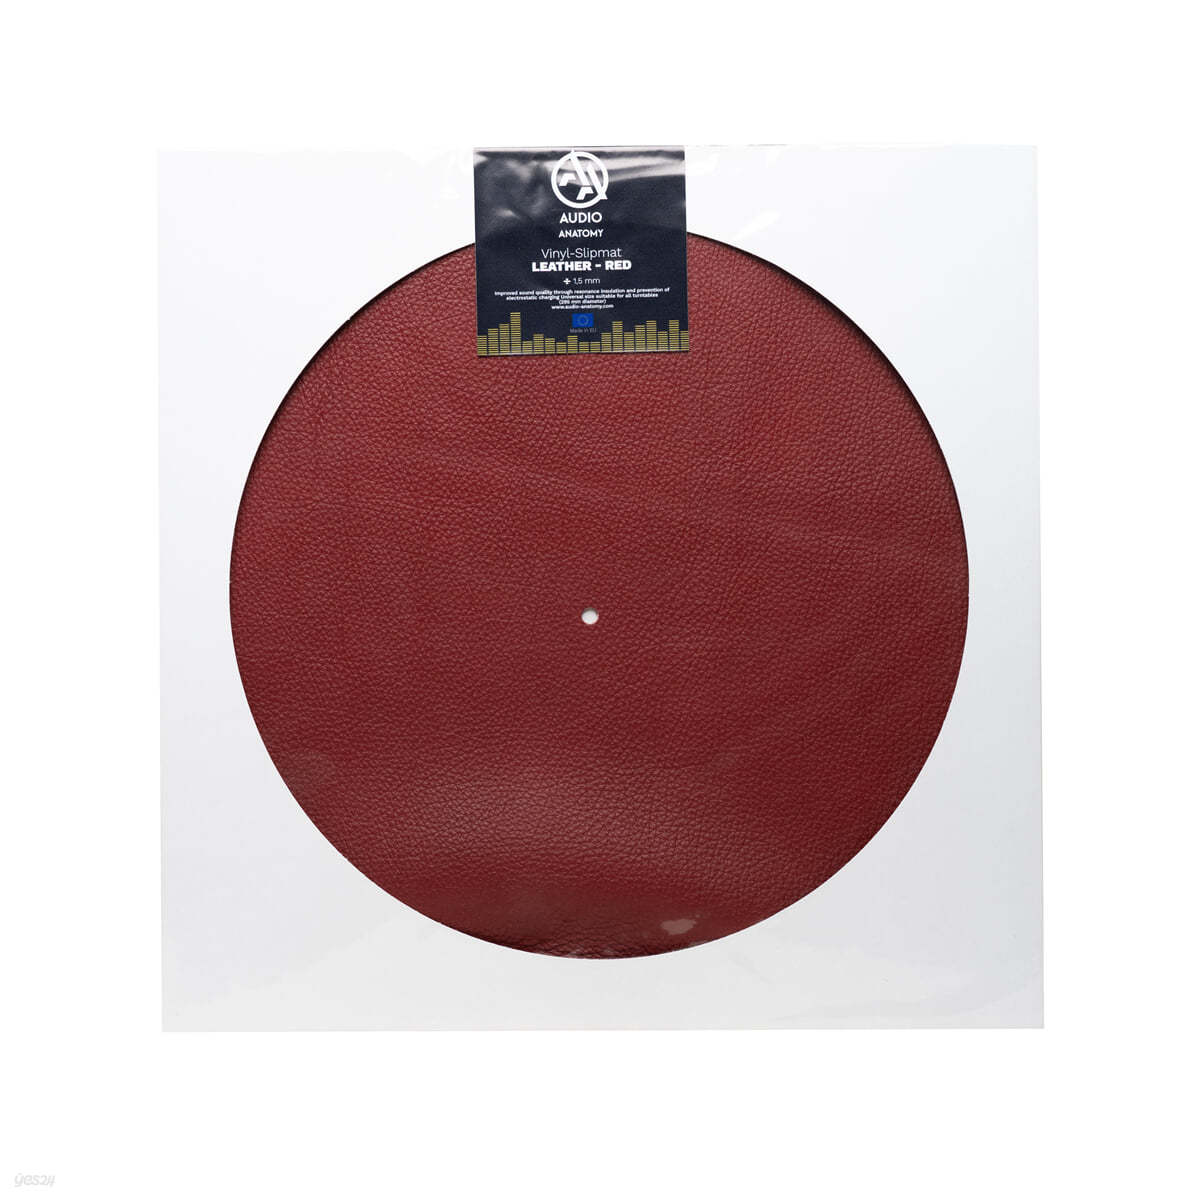 레드 가죽 턴테이블 슬립매트 (Leather Vinyl Slipmat / Red) 